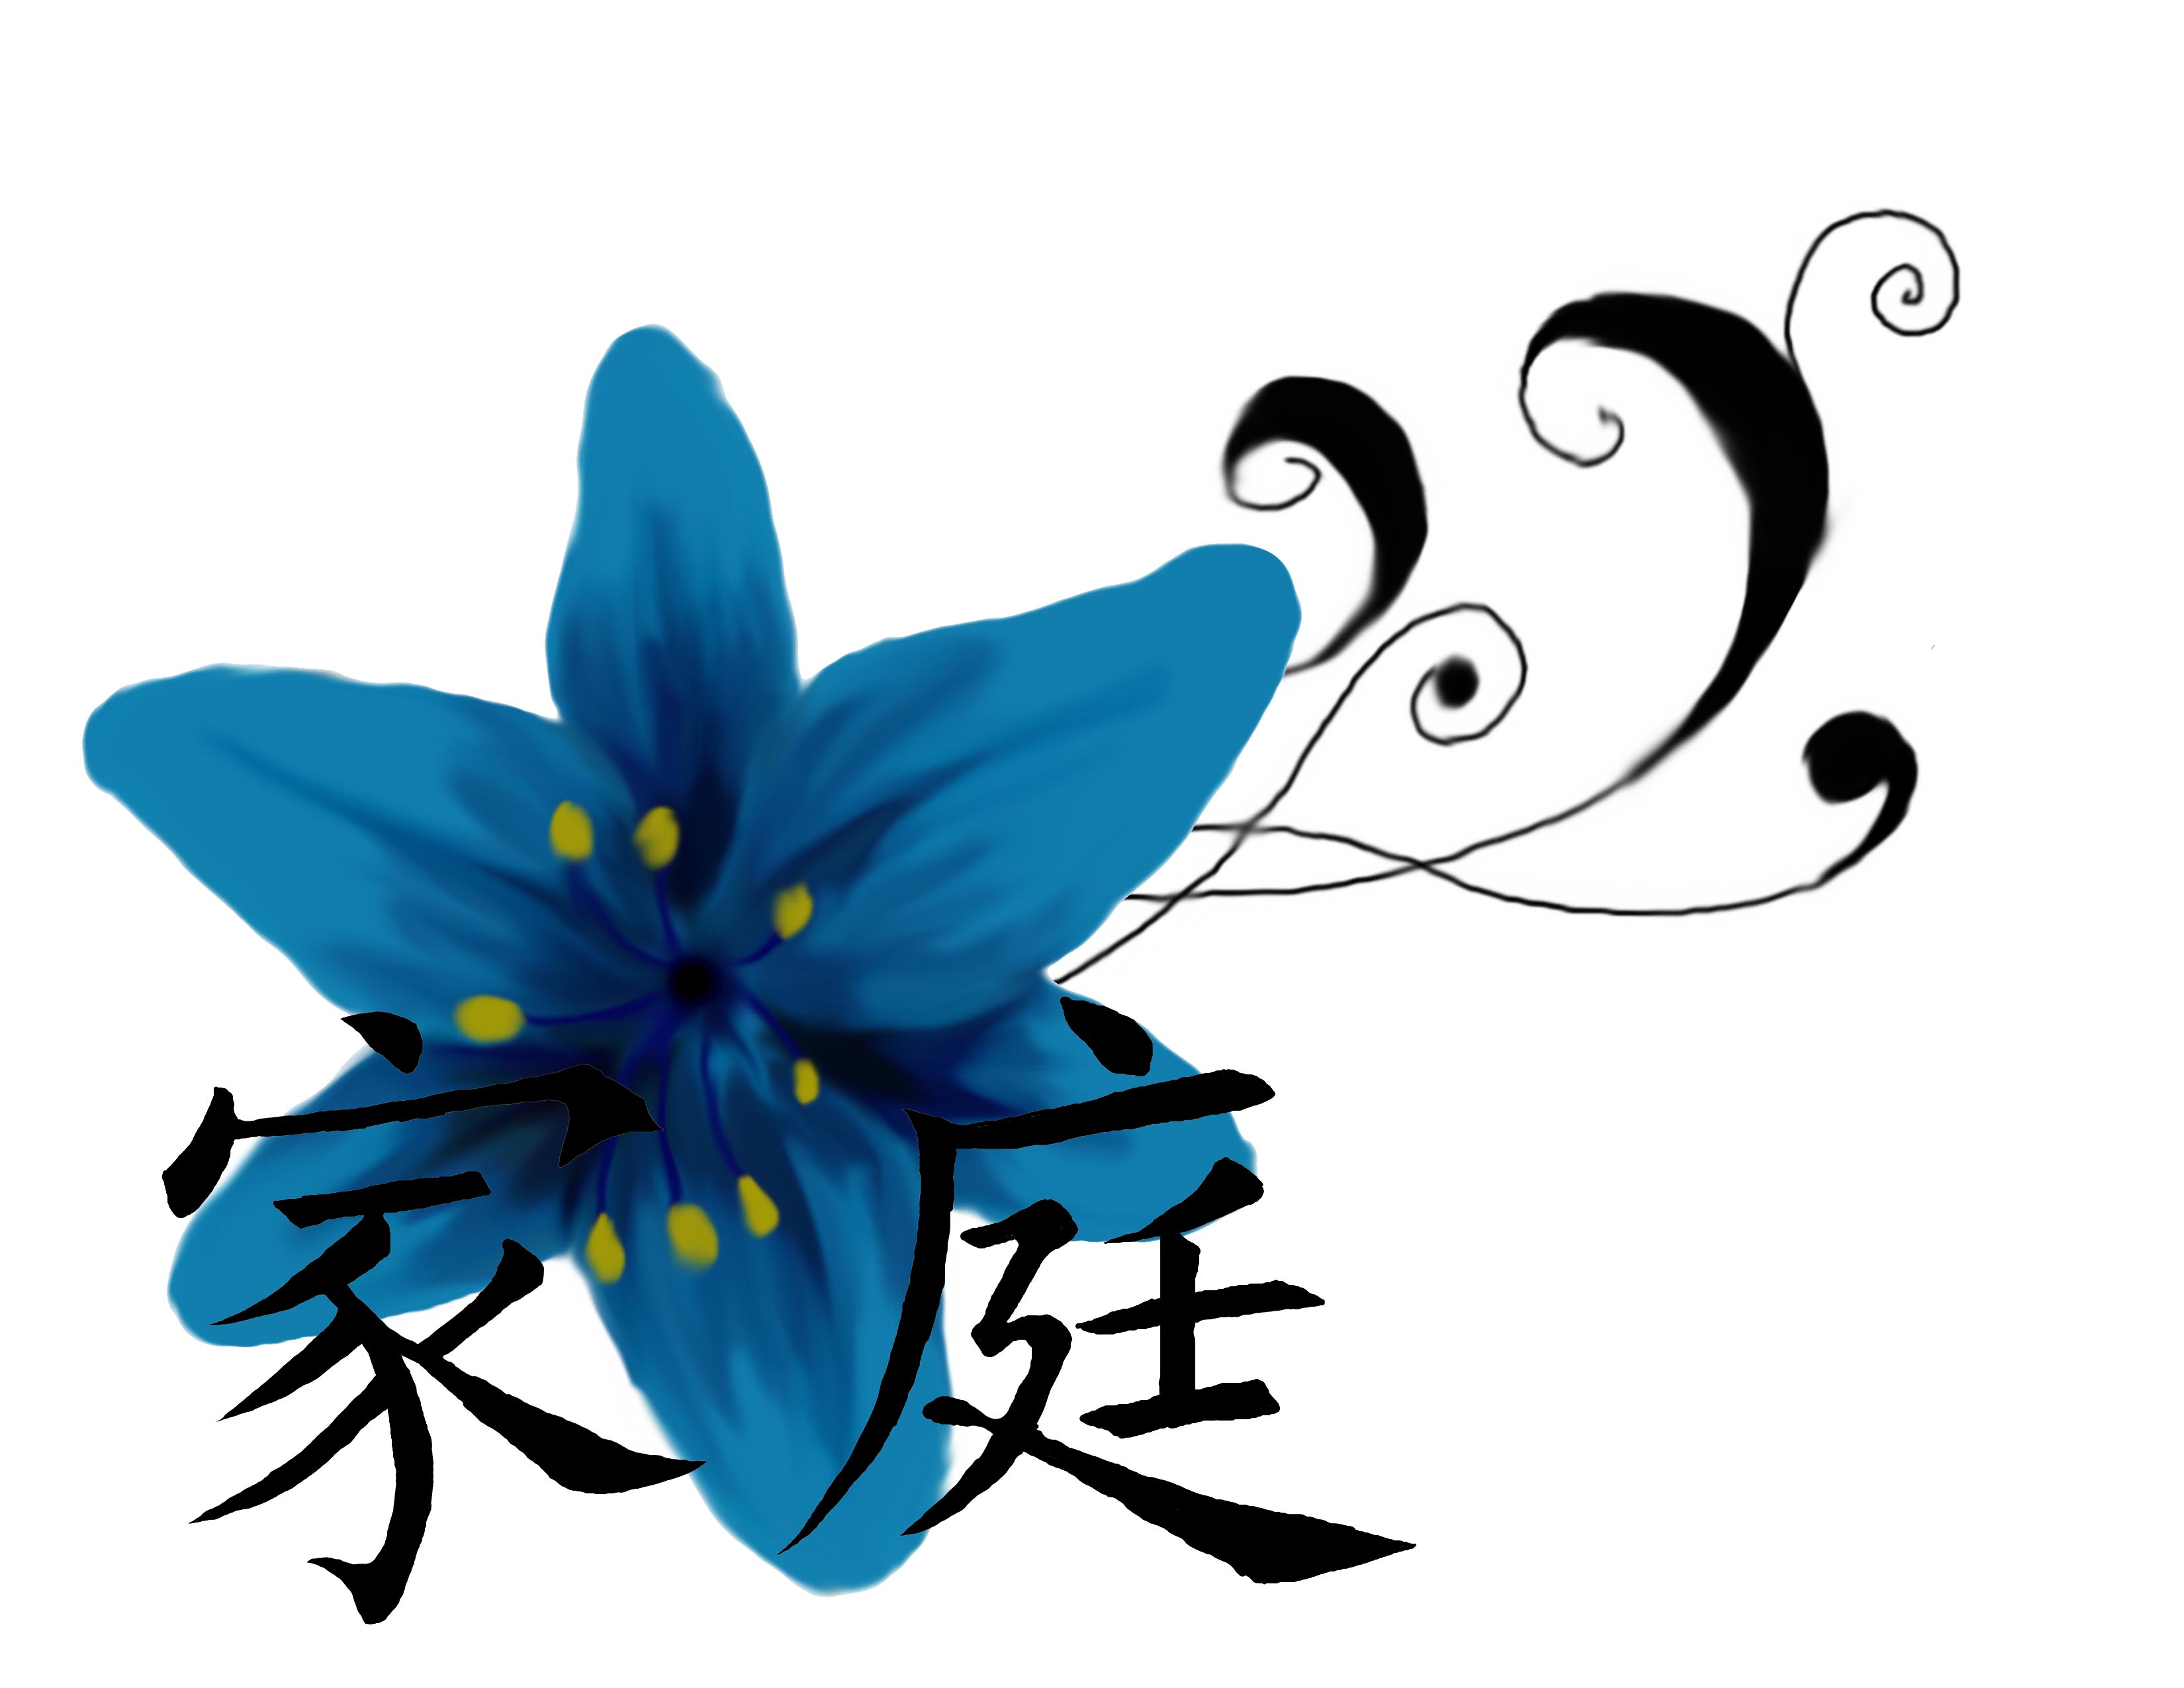 deviantART: More Like Blue Lily Tattoo by KelseySparrow67